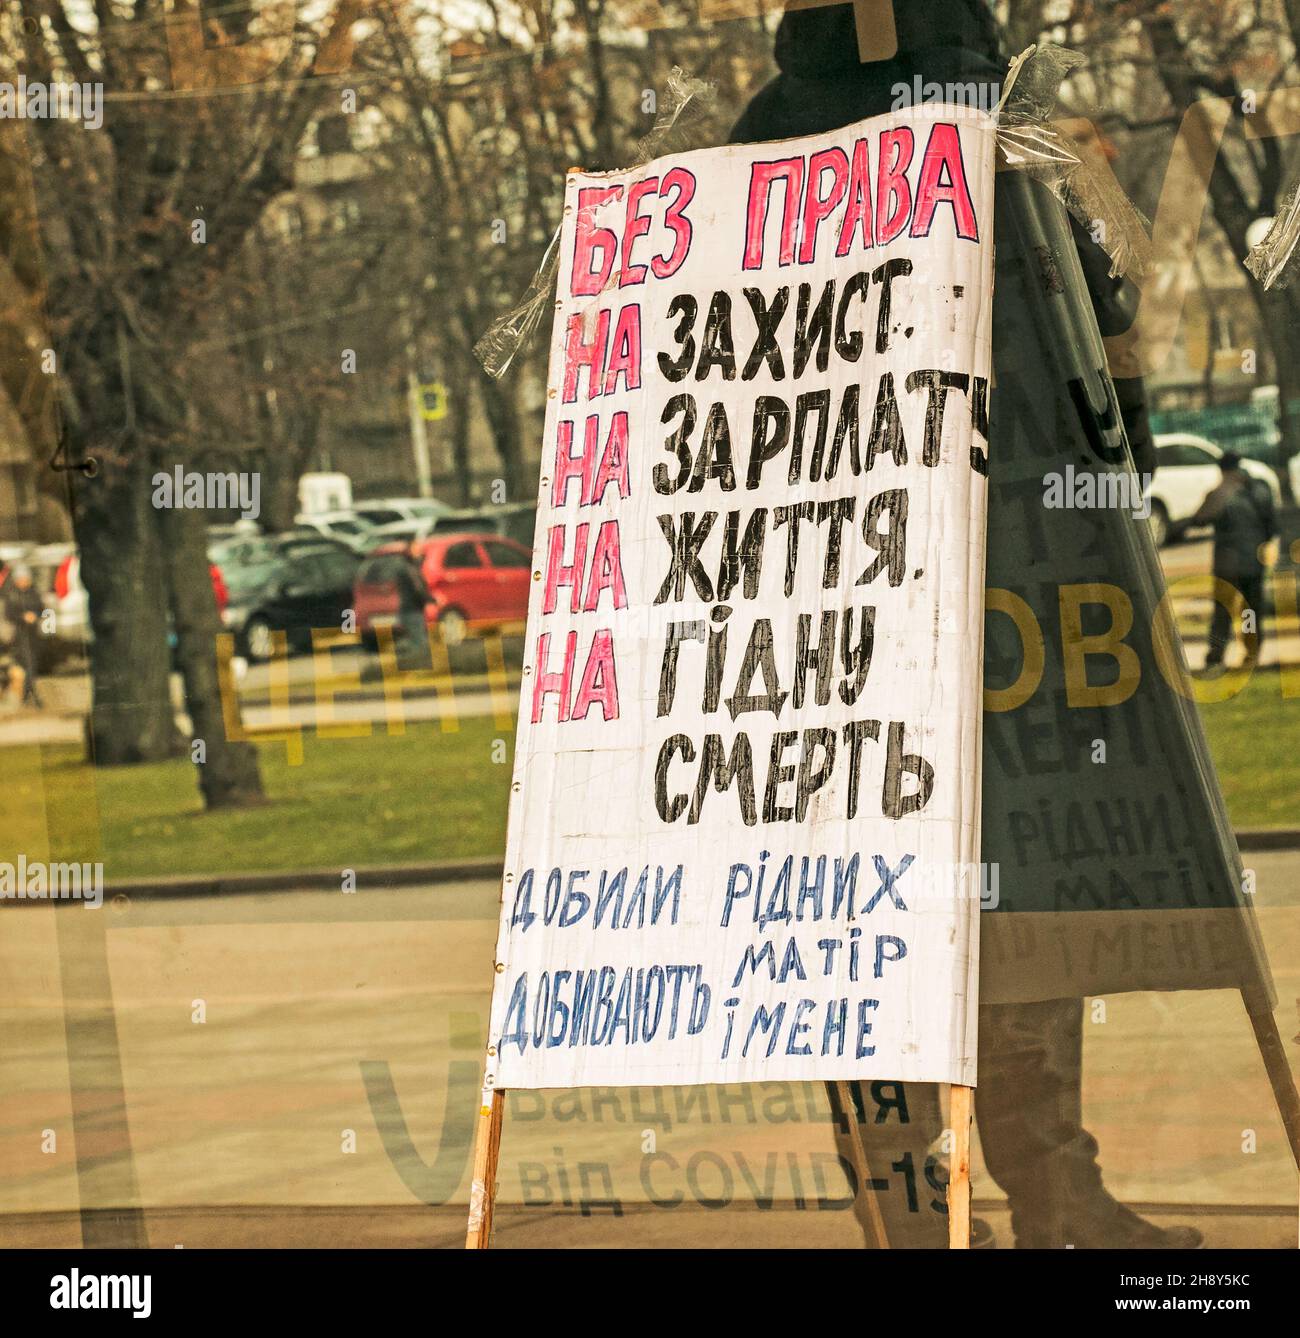 Dnepropetrovsk, Ucraina - 12.02.2021: Rally delle organizzazioni disabili della regione di Dnepropetrovsk contro la legge discriminatoria 3663. Il rally prende plac Foto Stock